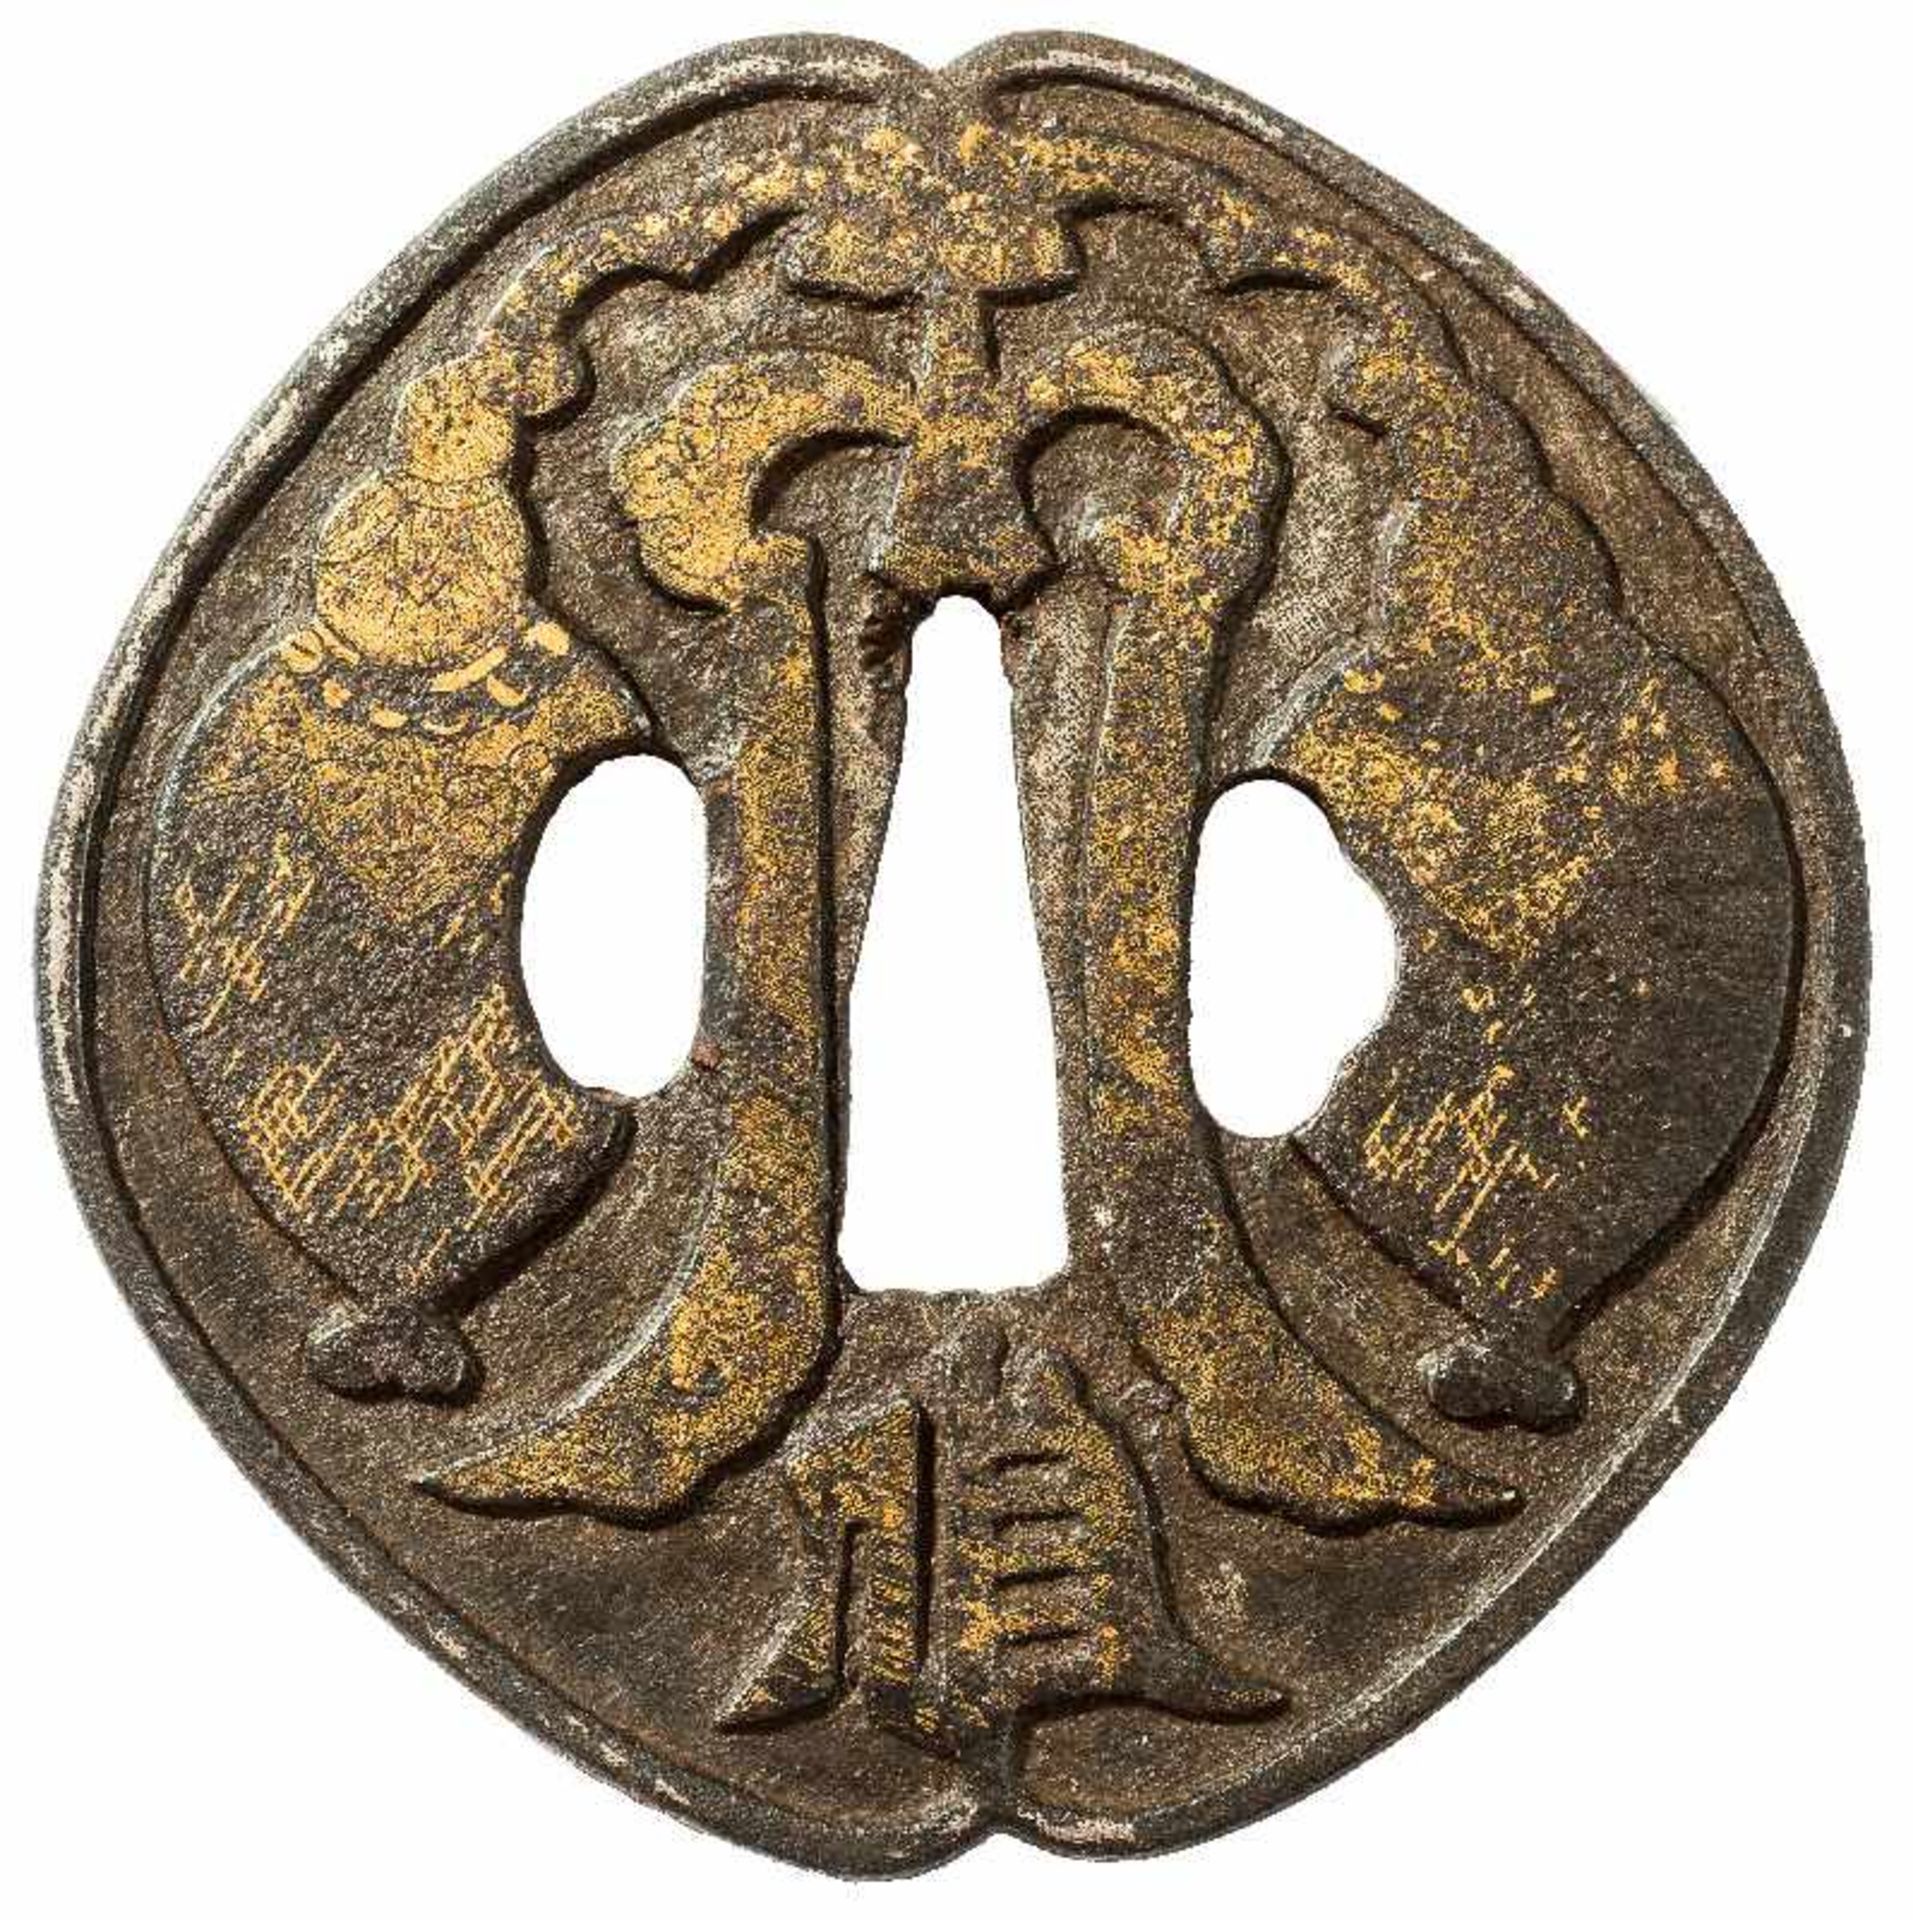 TSUBA MIT disORATIVEM RELIEF Eisen und Gold. Japan, 18. bis 19. Jh. Formal und auch disorativ